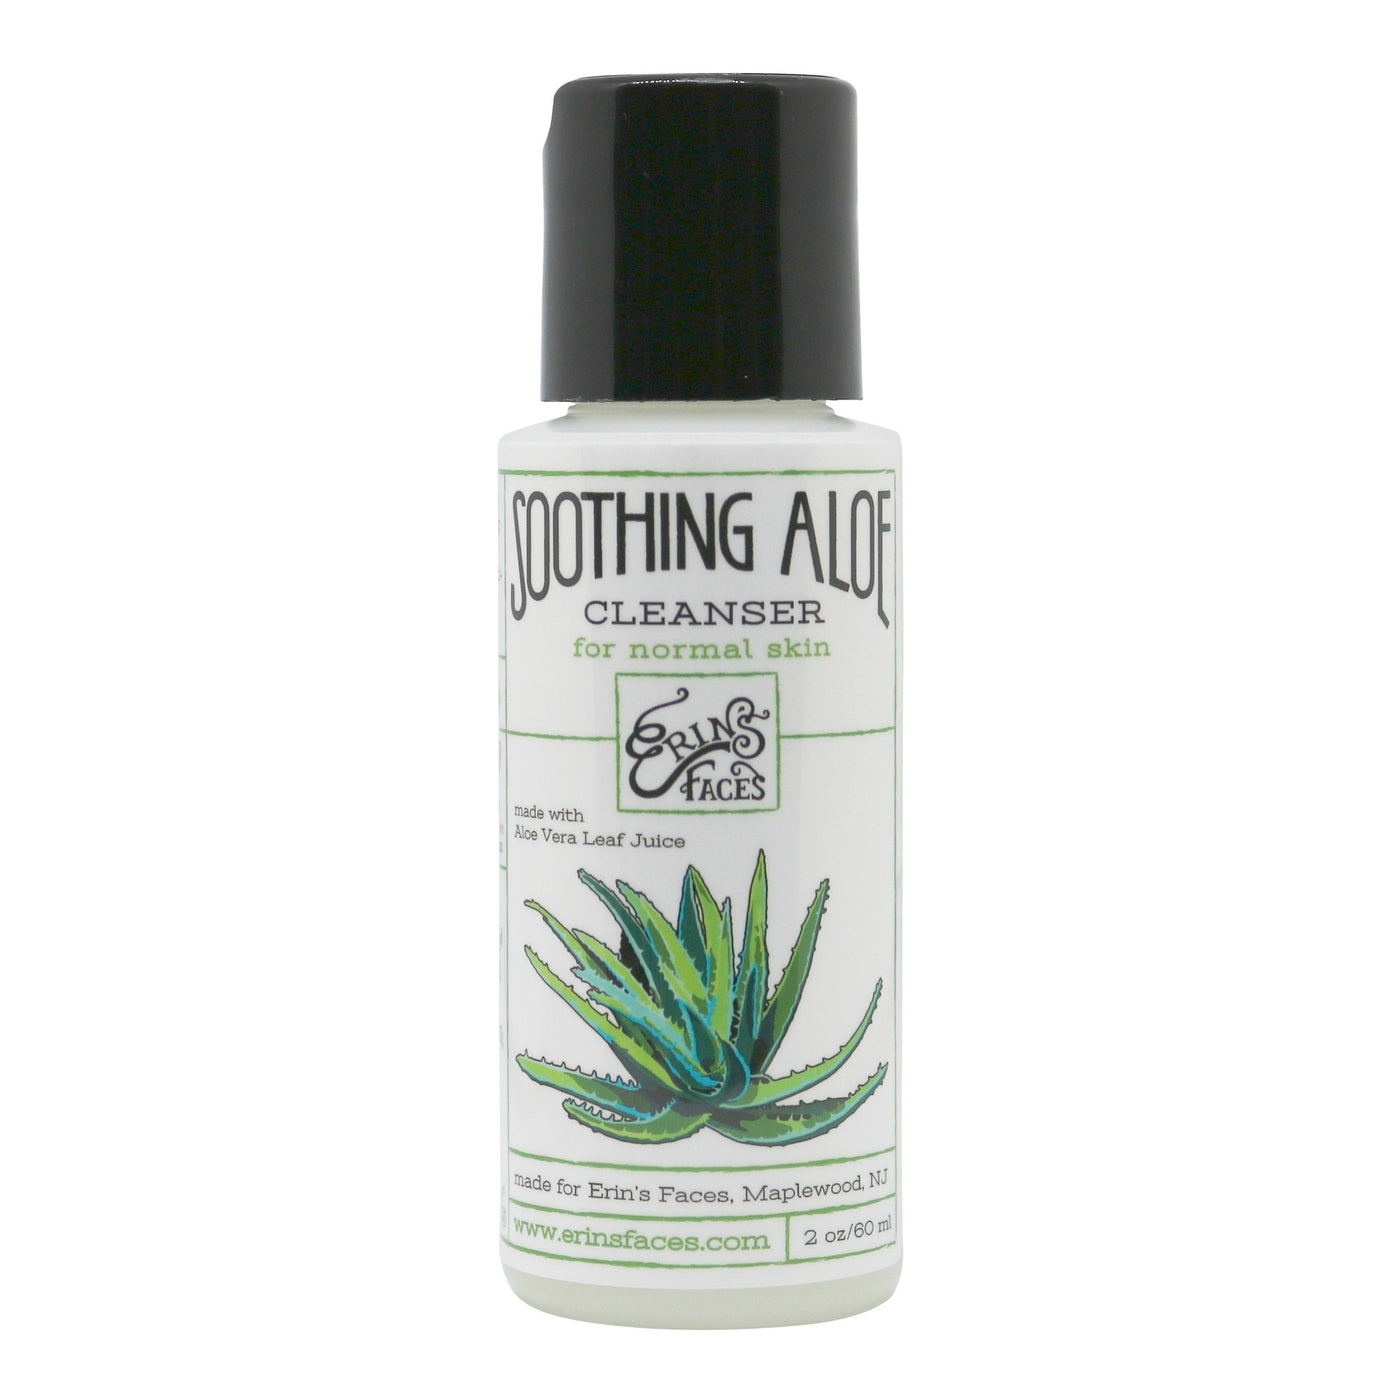 2oz bottle of soothing aloe cleanser for nourishing skin